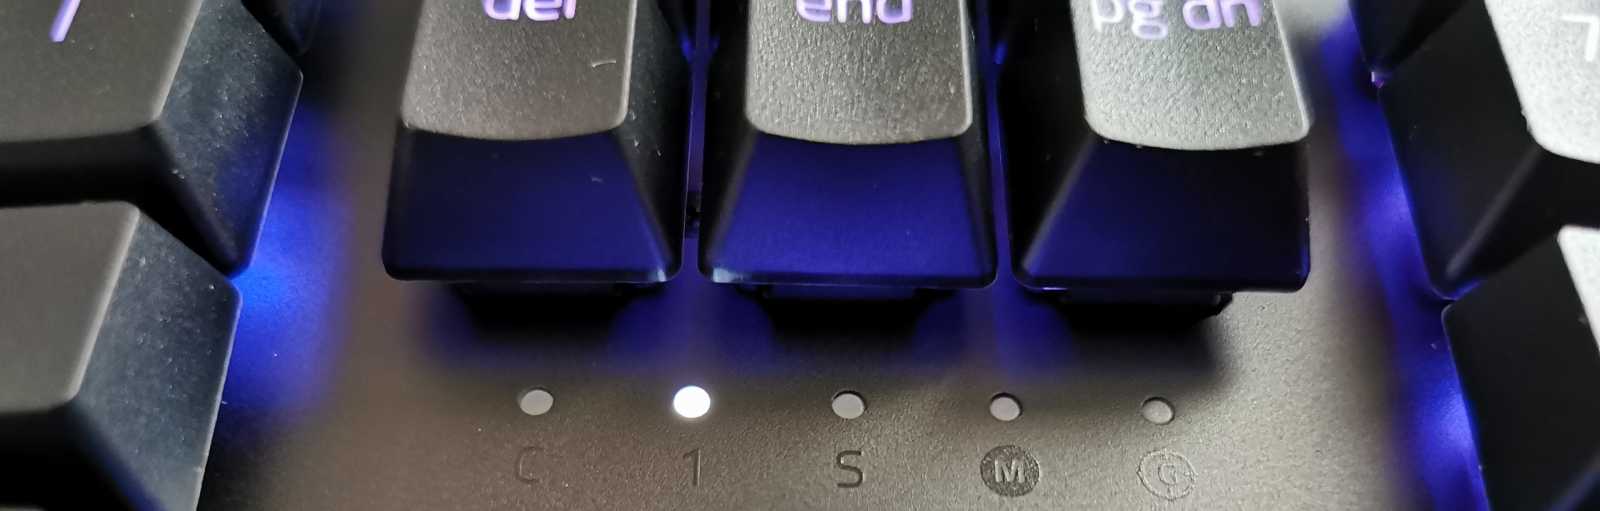 Recenze Razer Huntsman V2, prémiové klávesnice za prémiovou cenu